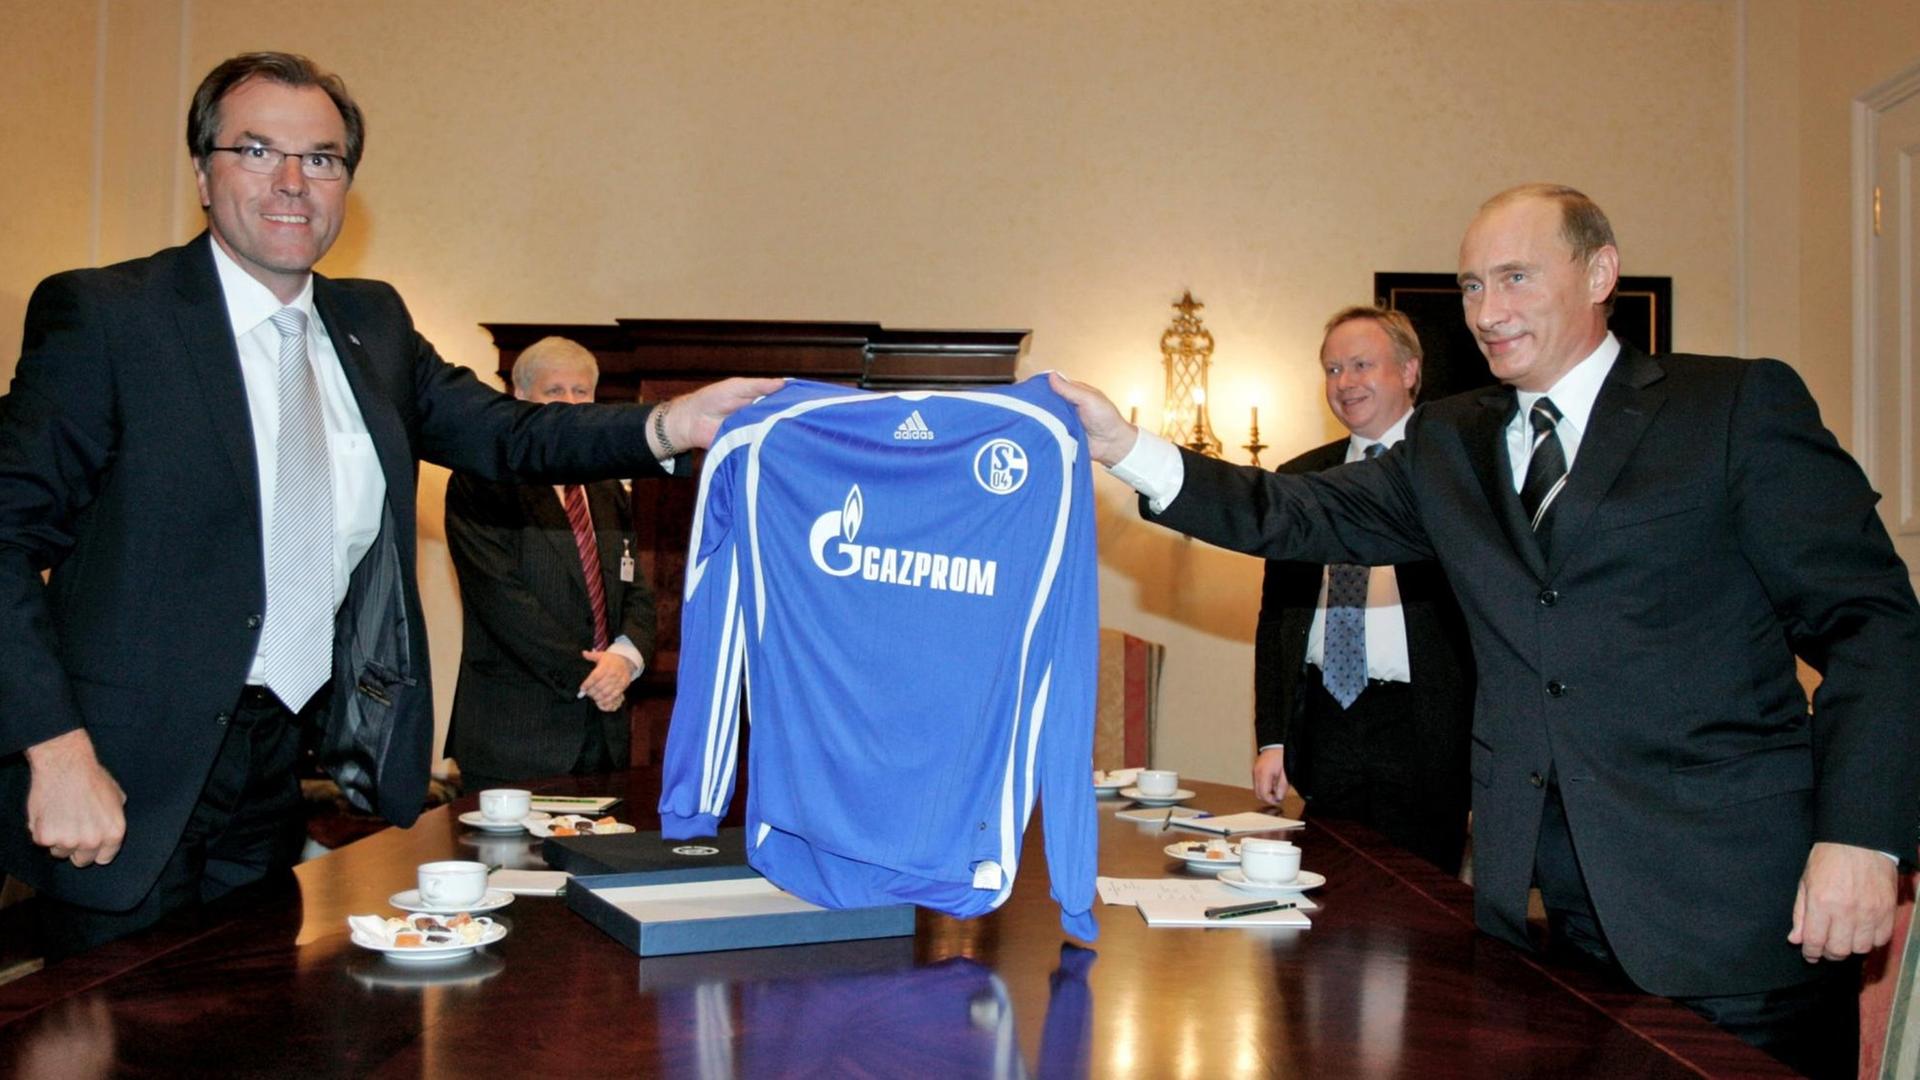 Der russische Präsident Wladimir Putin (r) und Clemens Tönnies, Aussichtsratsvorsitzender des Bundesligavereins Schalke 04, halten ein Schalke-Trikot mit der Aufschrift des Sponsors Gazprom.